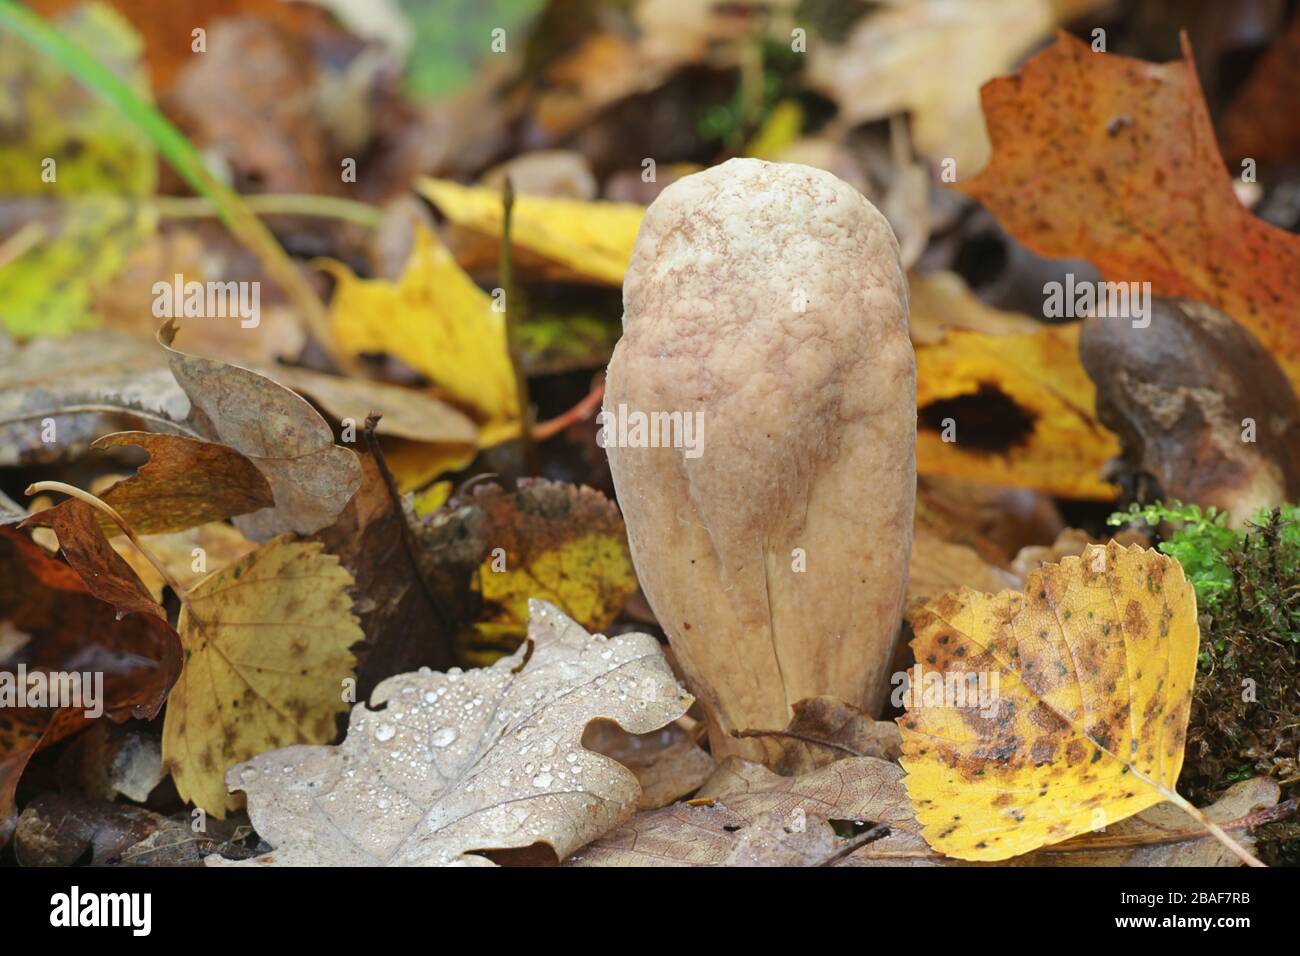 Clavariadelphus pistillaris, noto come Club gigantesco fungo, considerato alimento funzionale a causa della sua elevata attività antiossidante Foto Stock